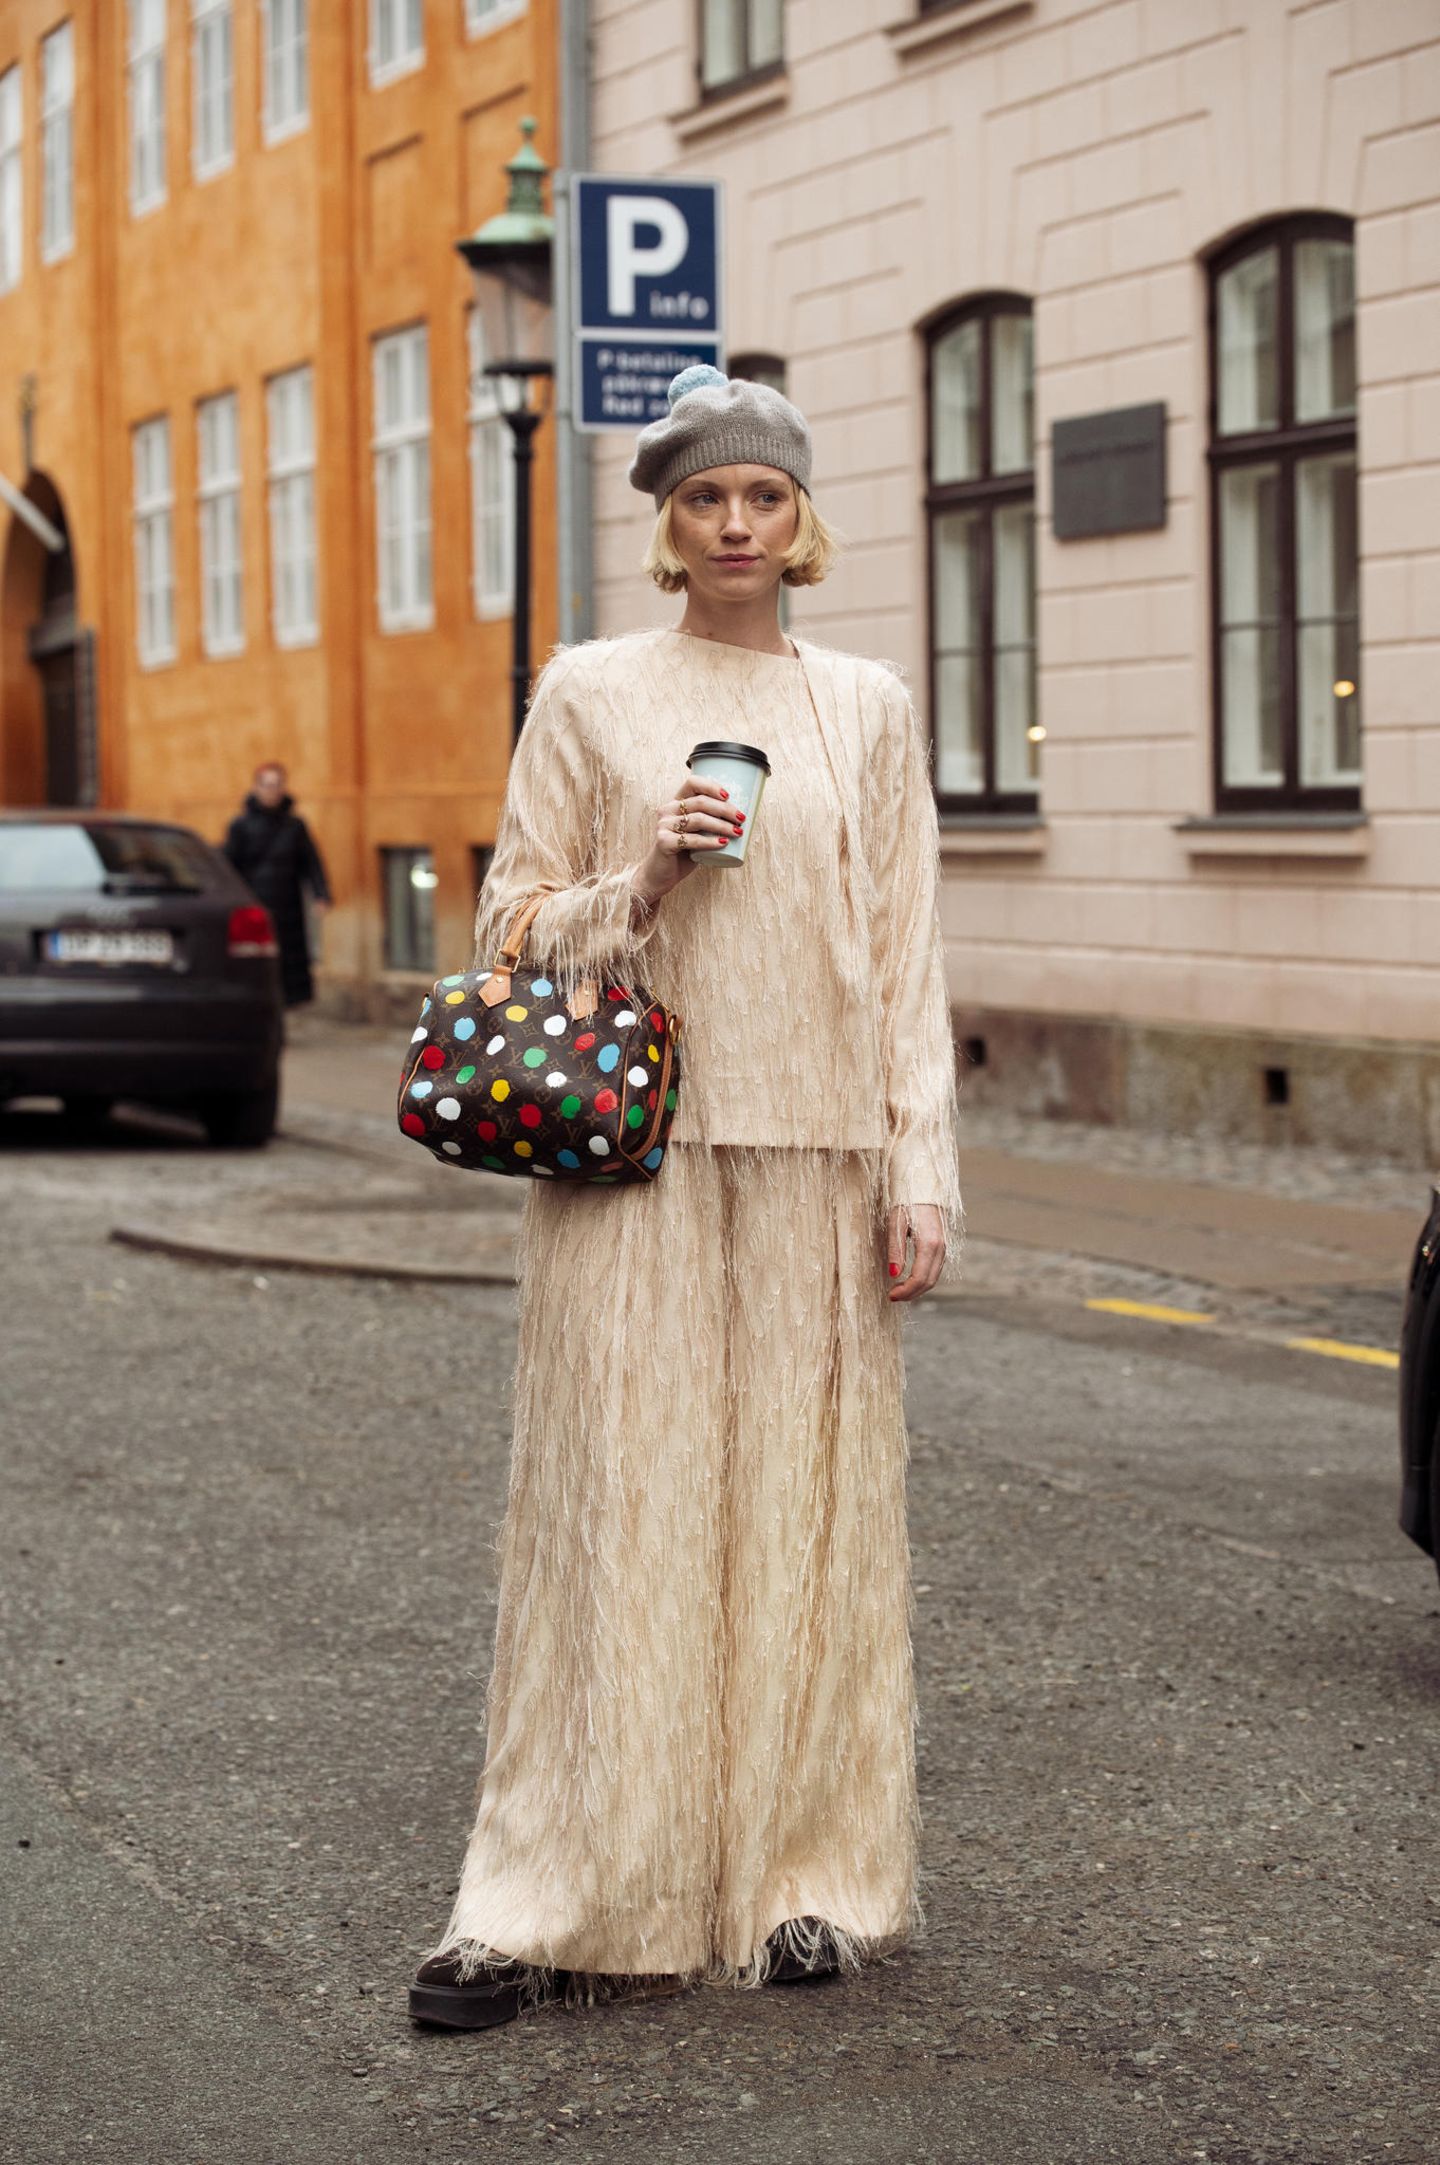 Die Designerin Pernile Rosenkilde besucht die Modenschauen in einem beigefarbenen Zweiteiler mit Fransen. Dazu kombiniert sie eine graue Mütze und eine Louis-Vuitton-Tasche